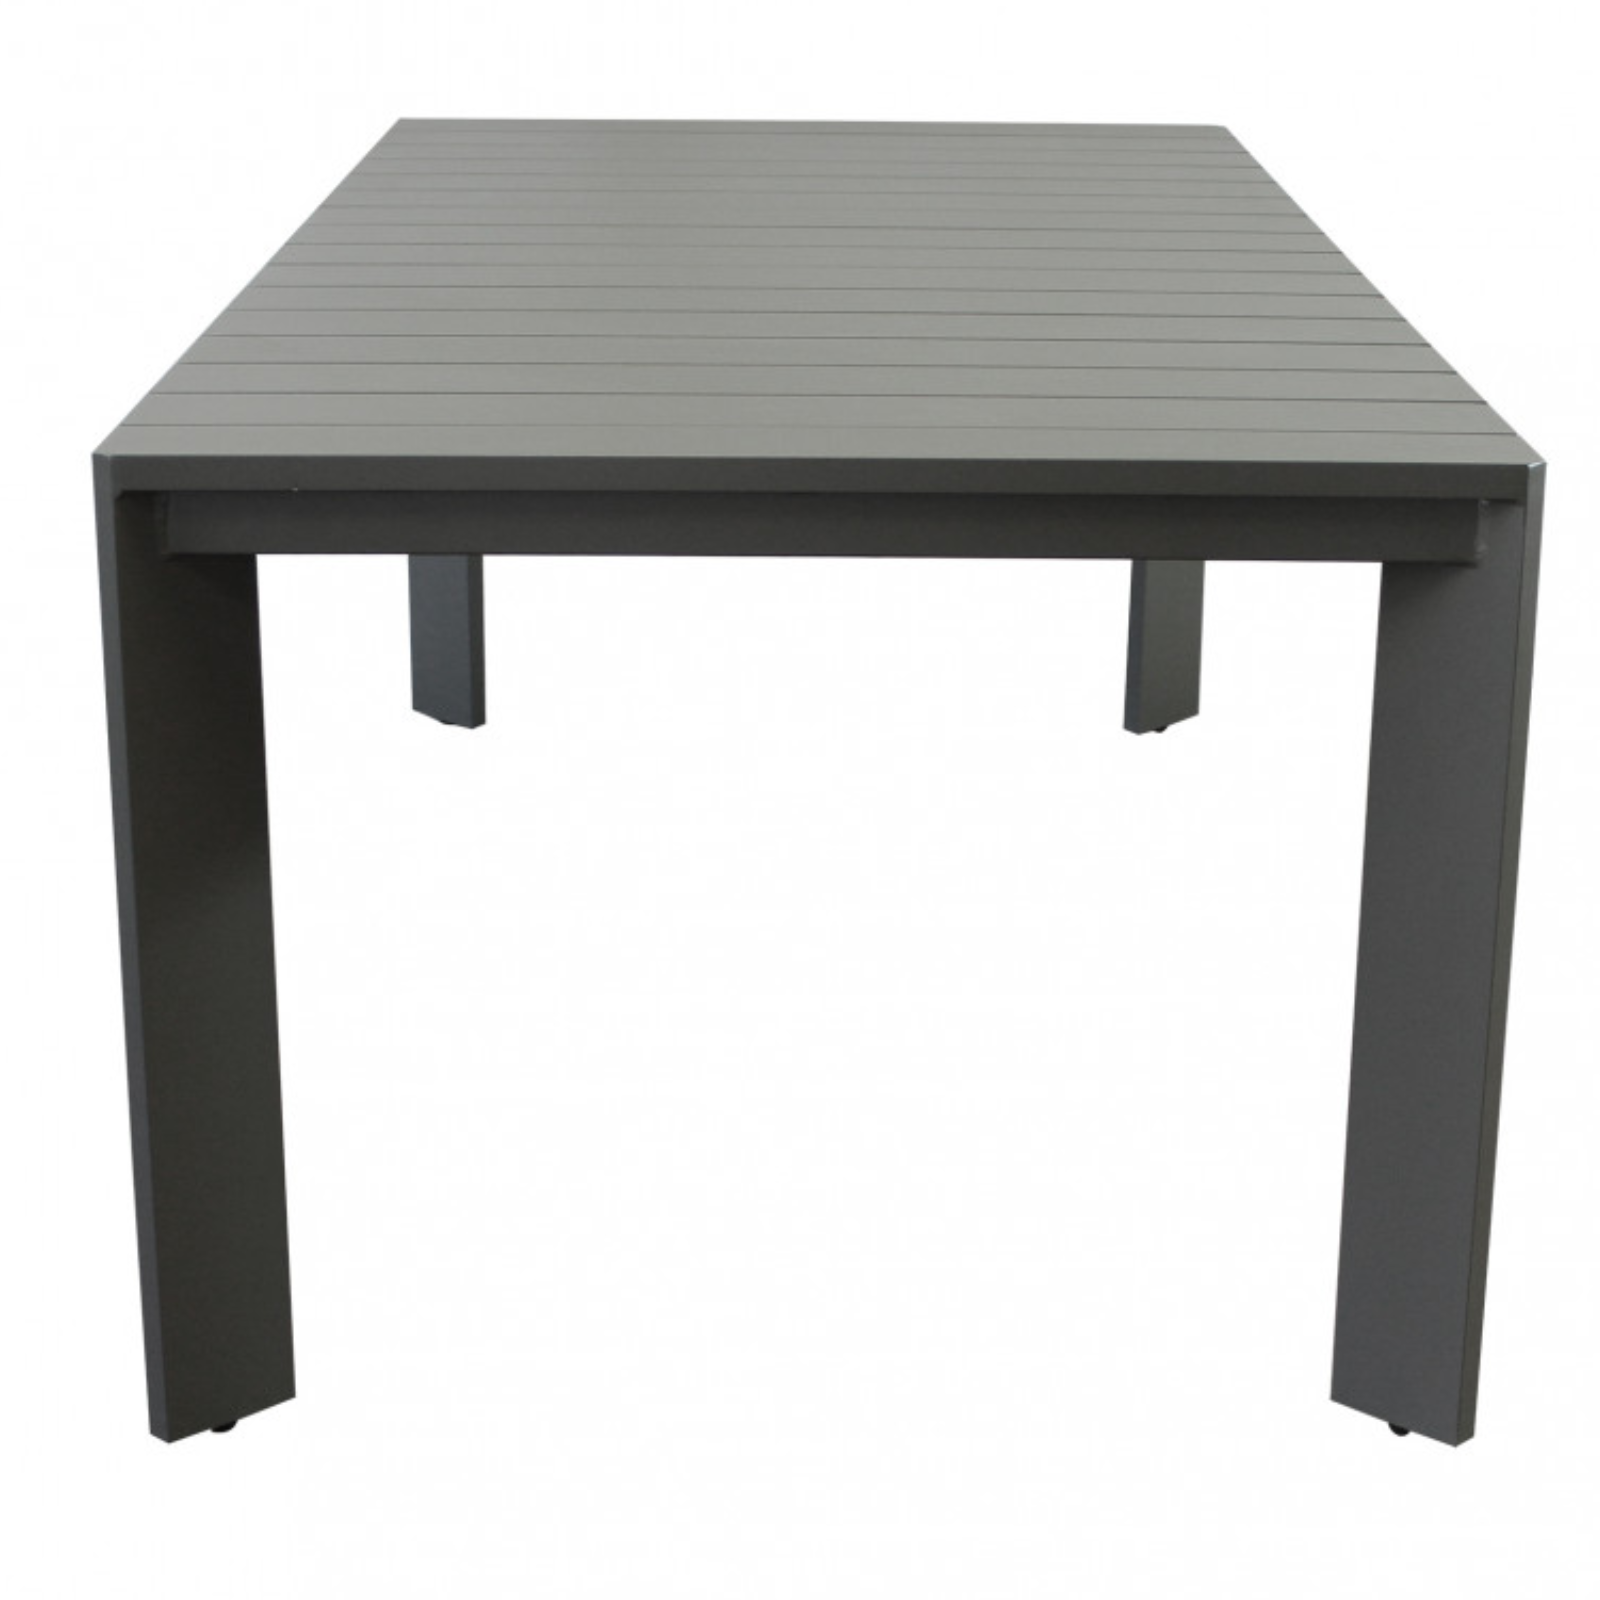 Tavolo rettangolare 200x100 in alluminio antracite da interno o esterno - Connec